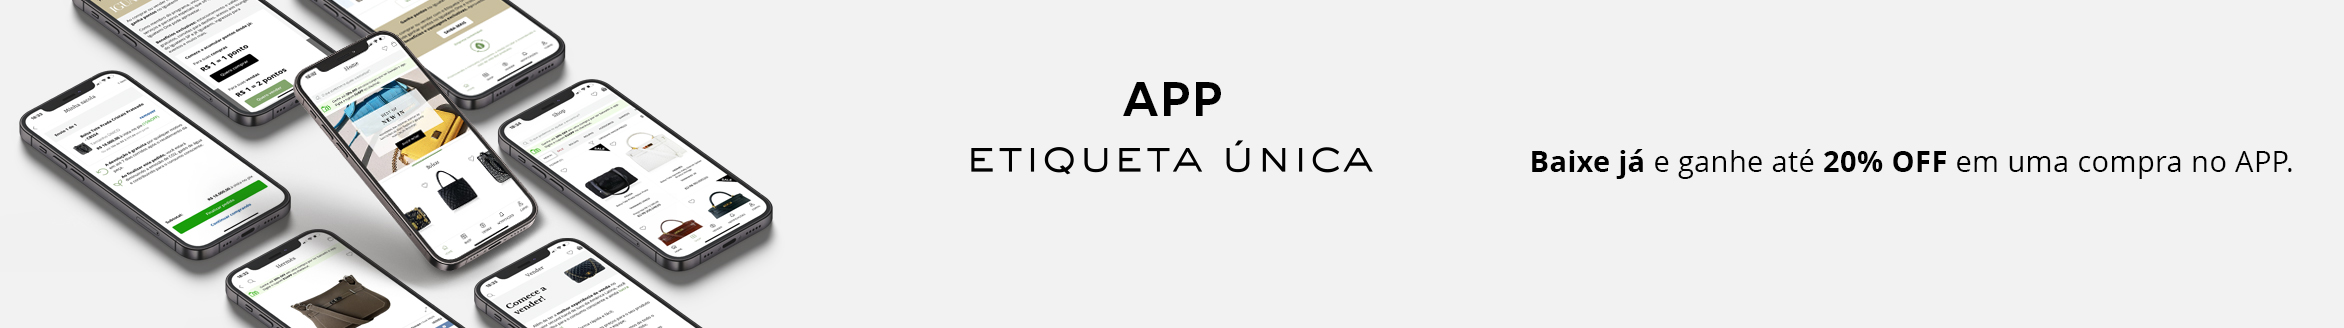 Landing page de lançamento do app Etiqueta Única